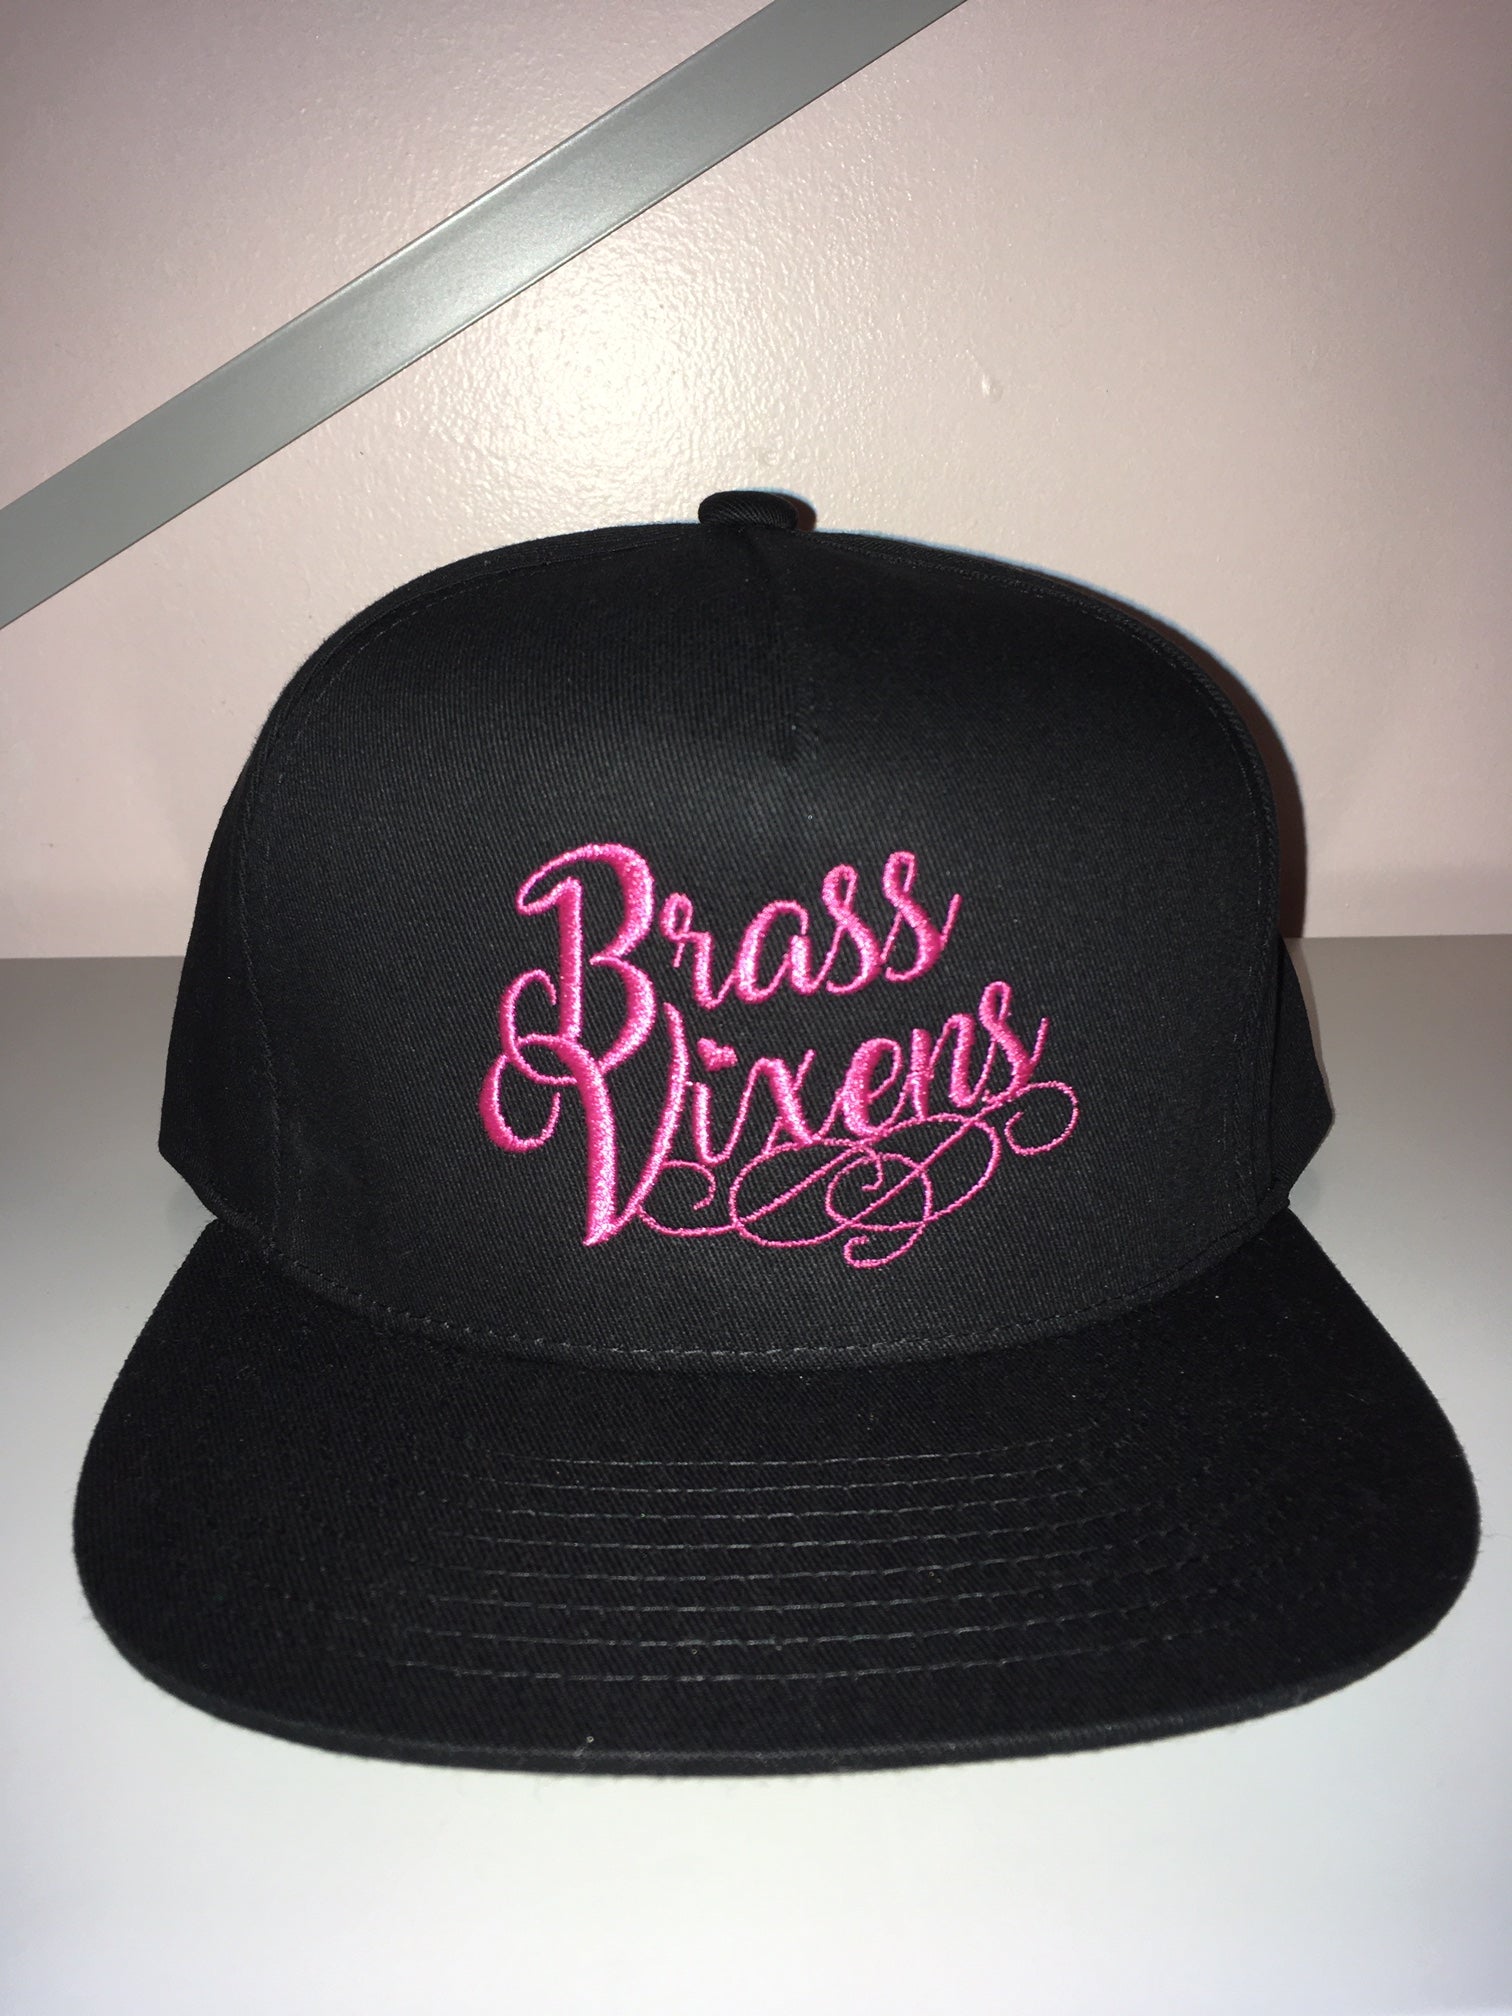 Brass Vixens Cursive Hat